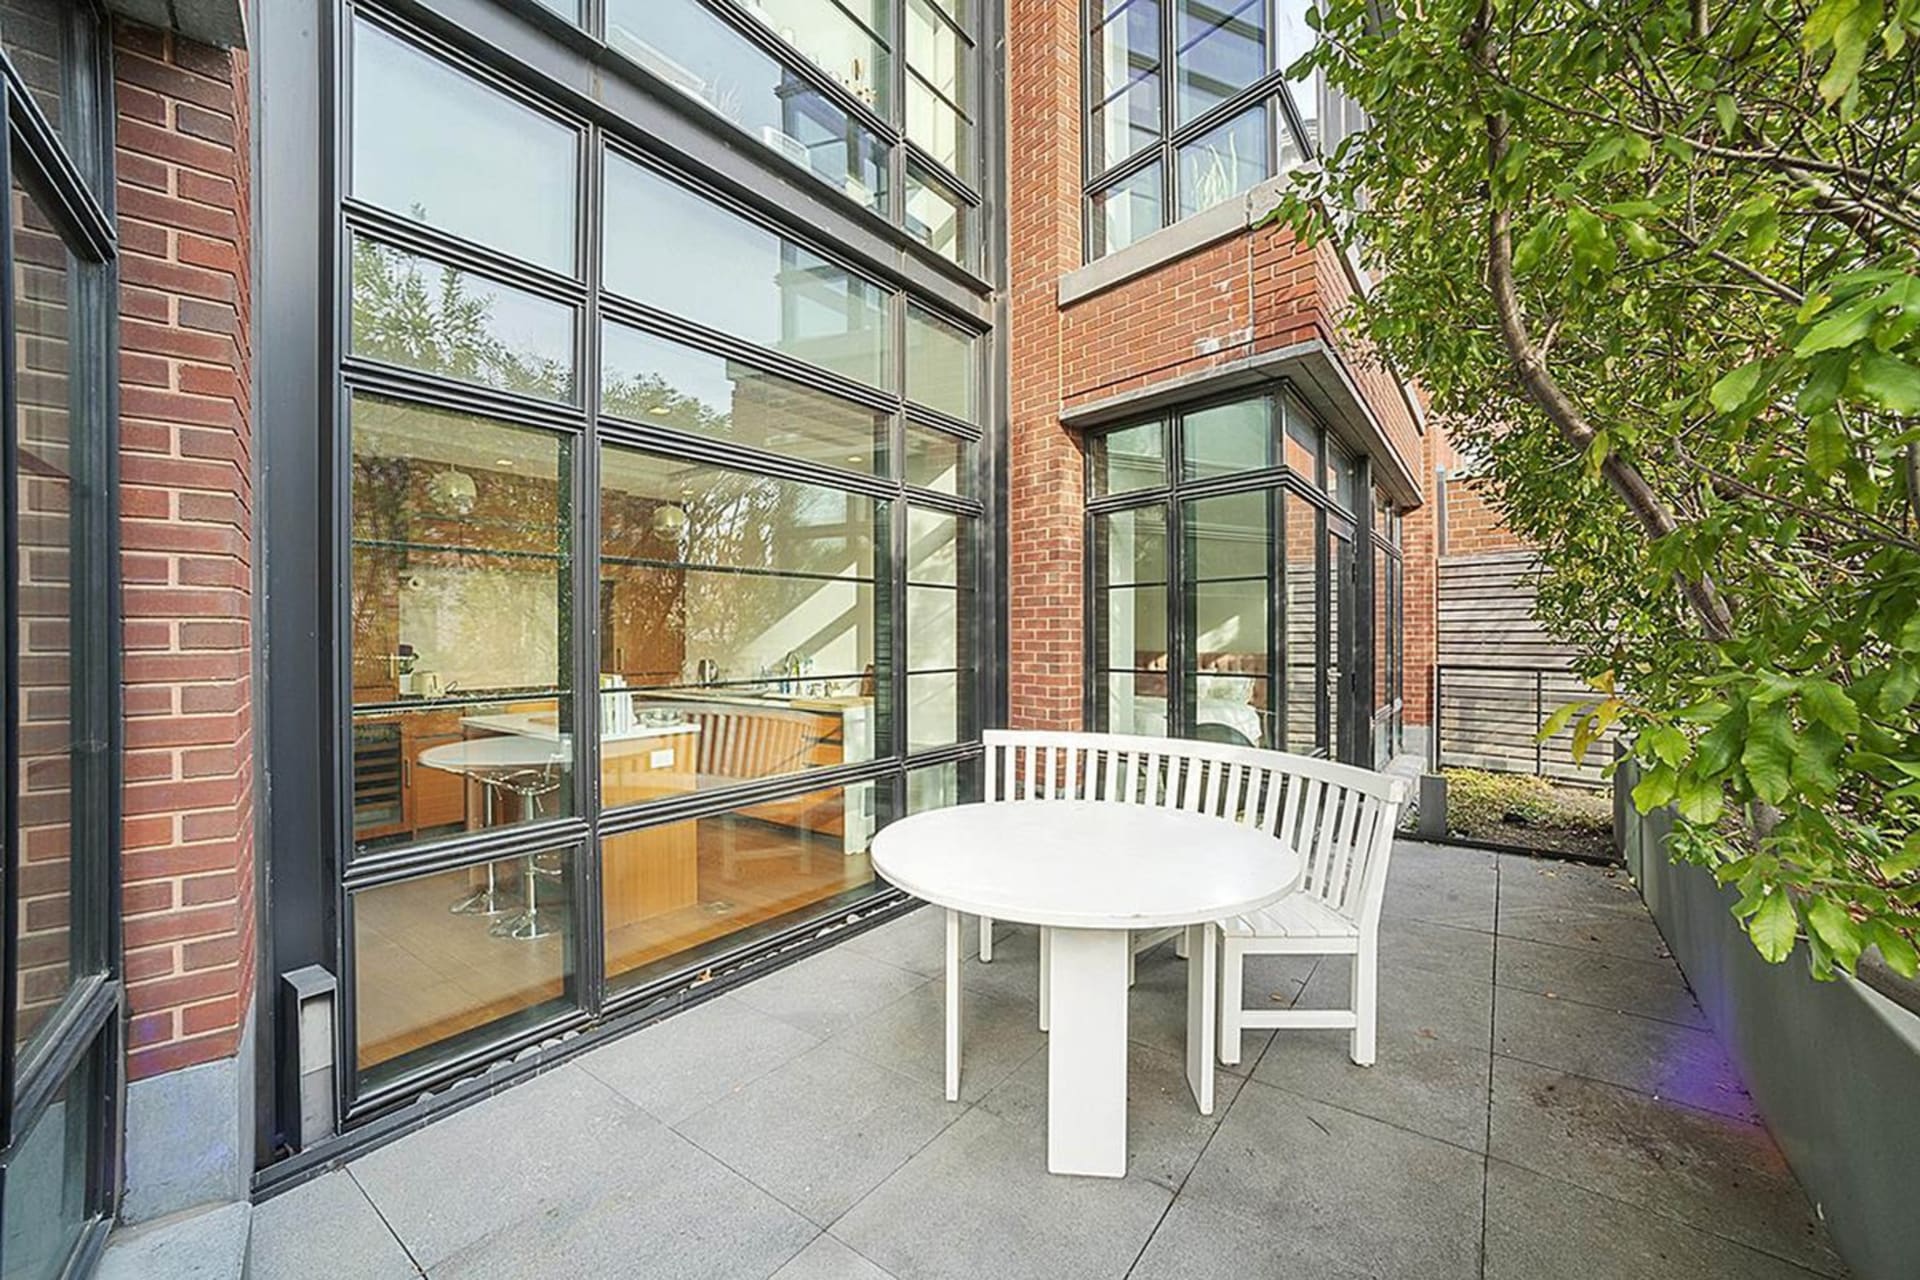  Irina Shayk pronajímá svůj nádherný byt v New Yorku: Posezení na soukroné terase